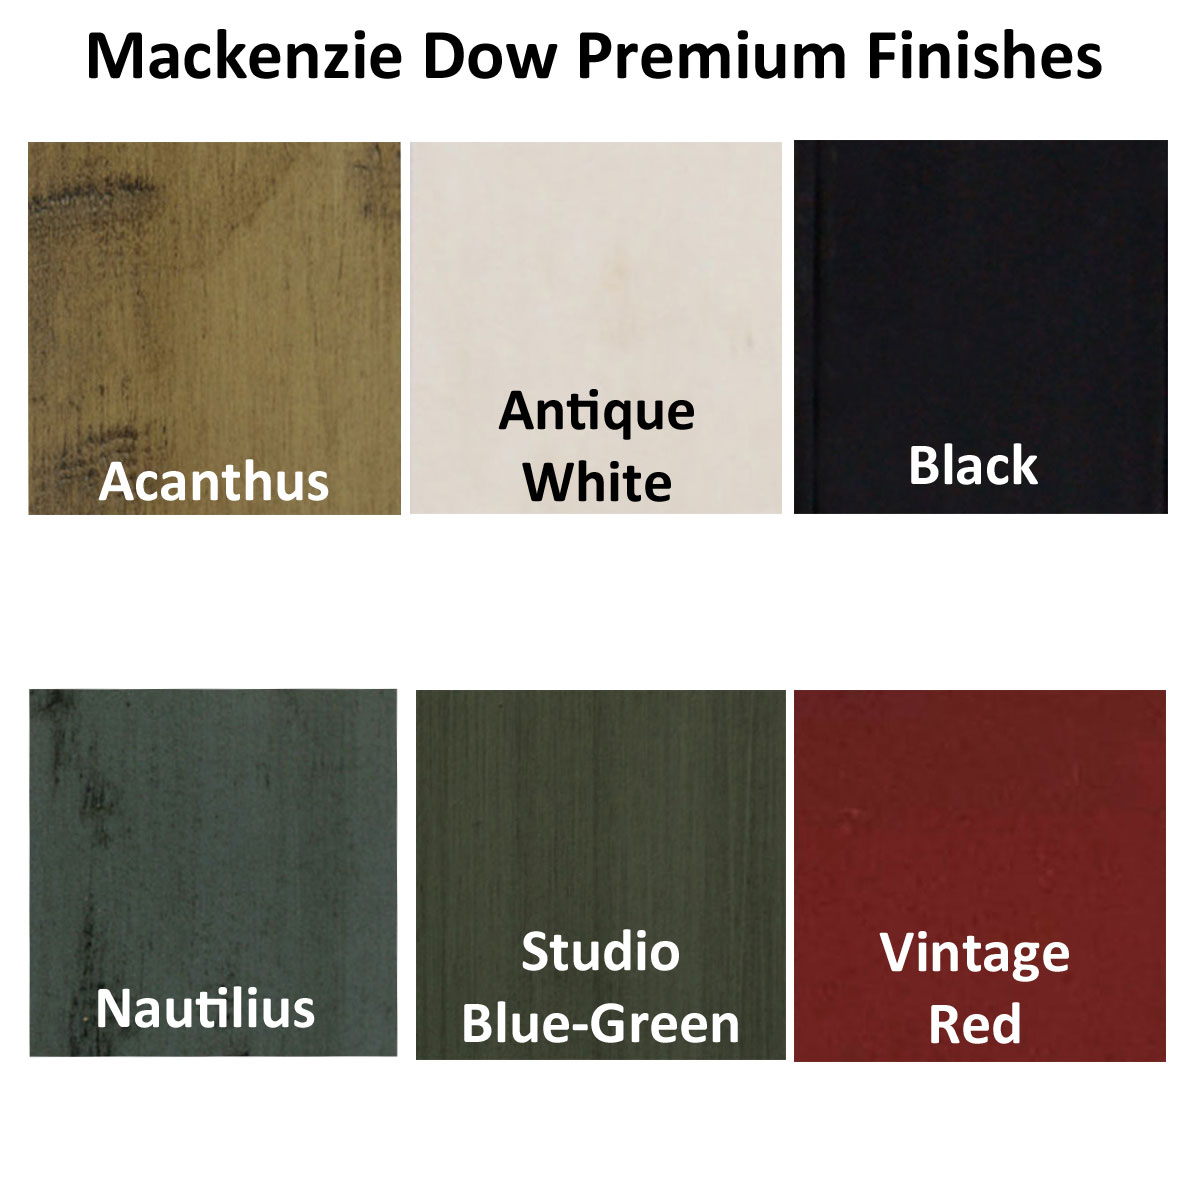 Mackenzie Dow Premium Finishes